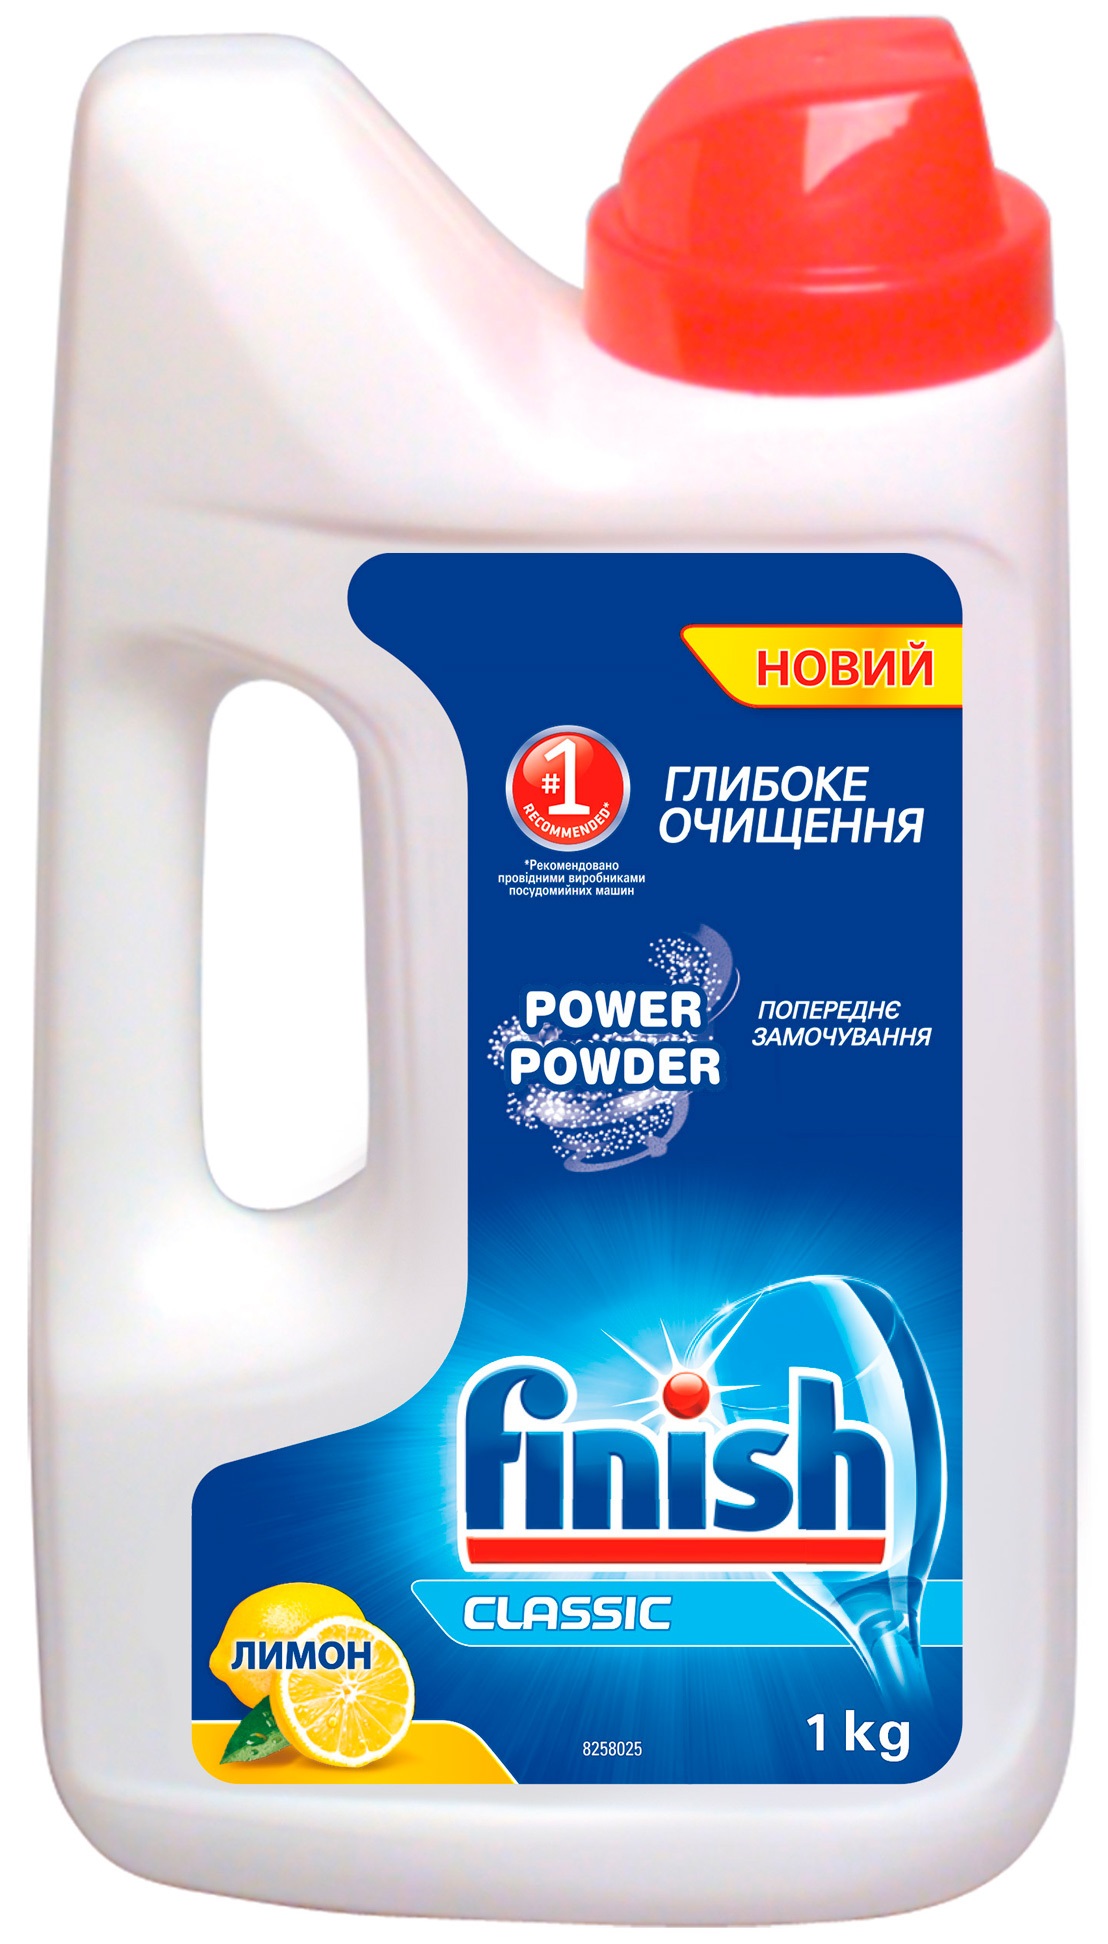 Порошок для посудомоечных машин FINISH Classic Лимон 1кг в Киеве